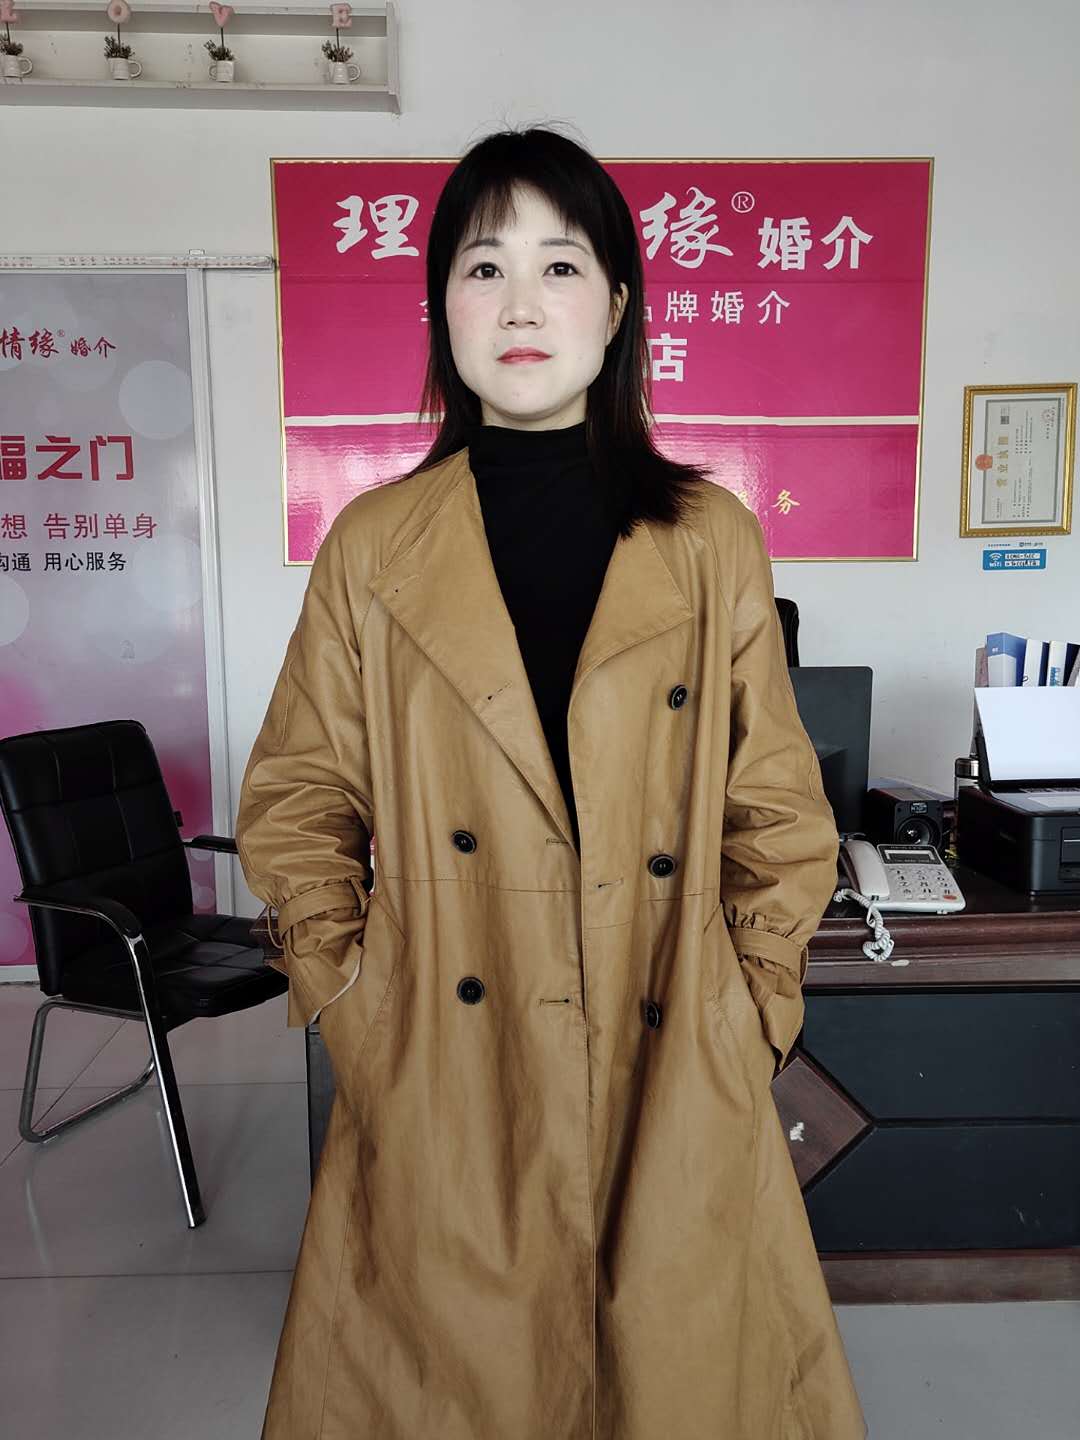 清秀少女佟少苹[40P]|MM 写真 - 武当休闲山庄 - 稳定,和谐,人性化的中文社区